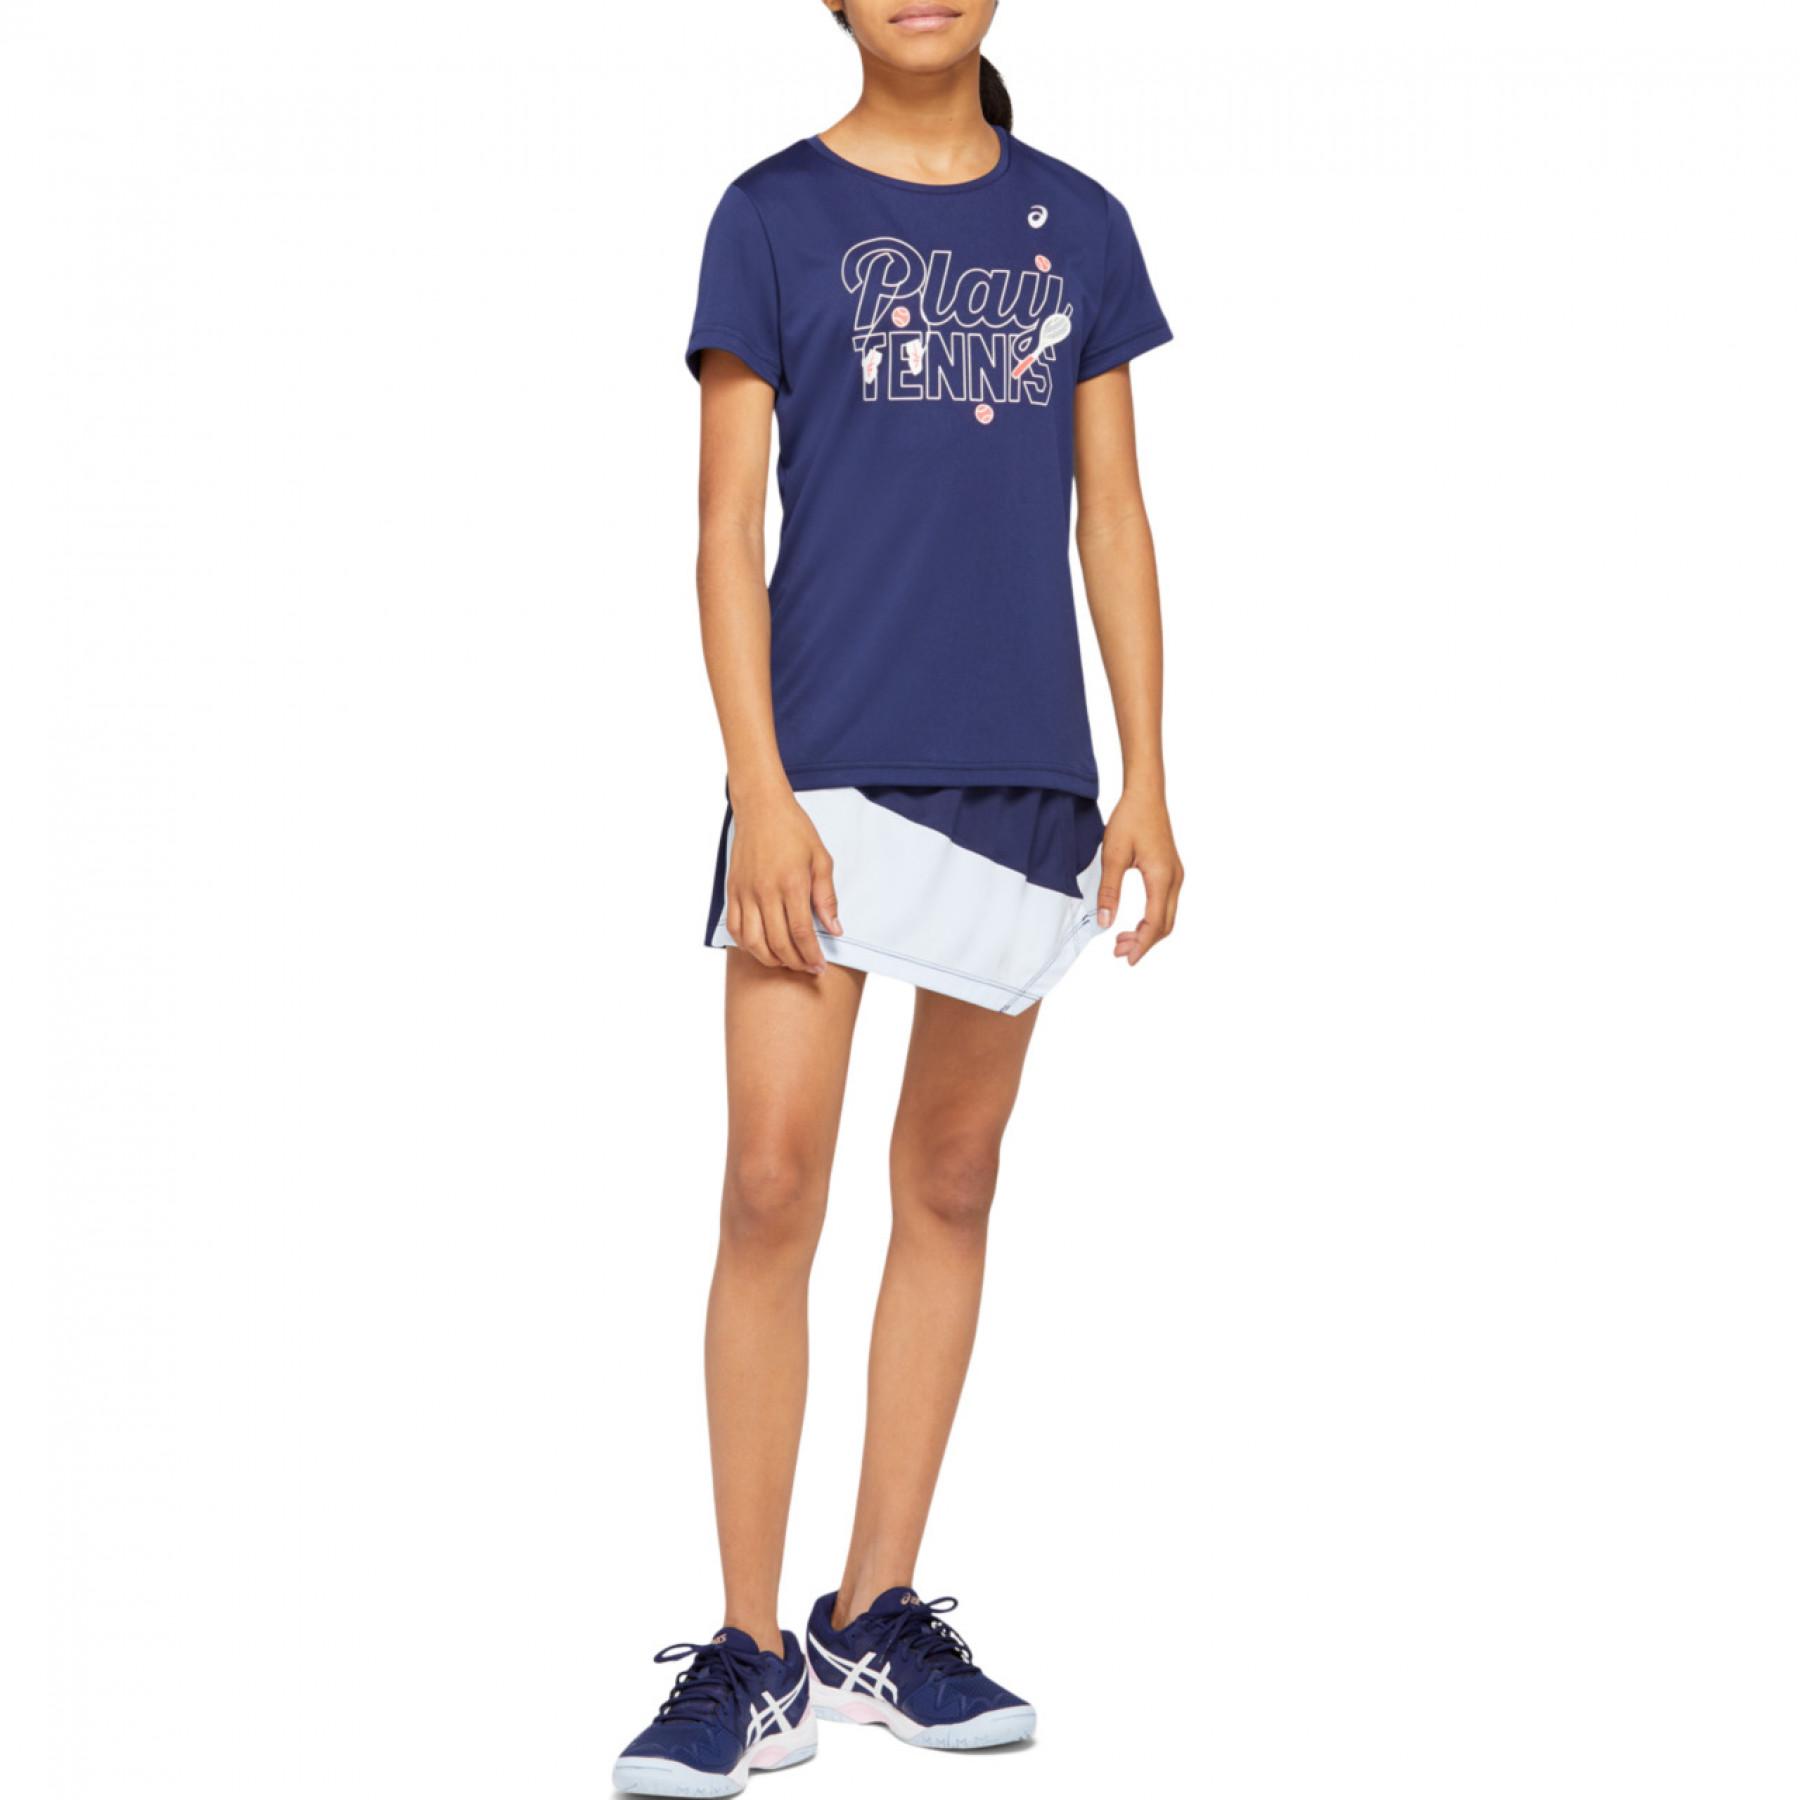 Koszulka dziewczęca Asics Tennis GPX